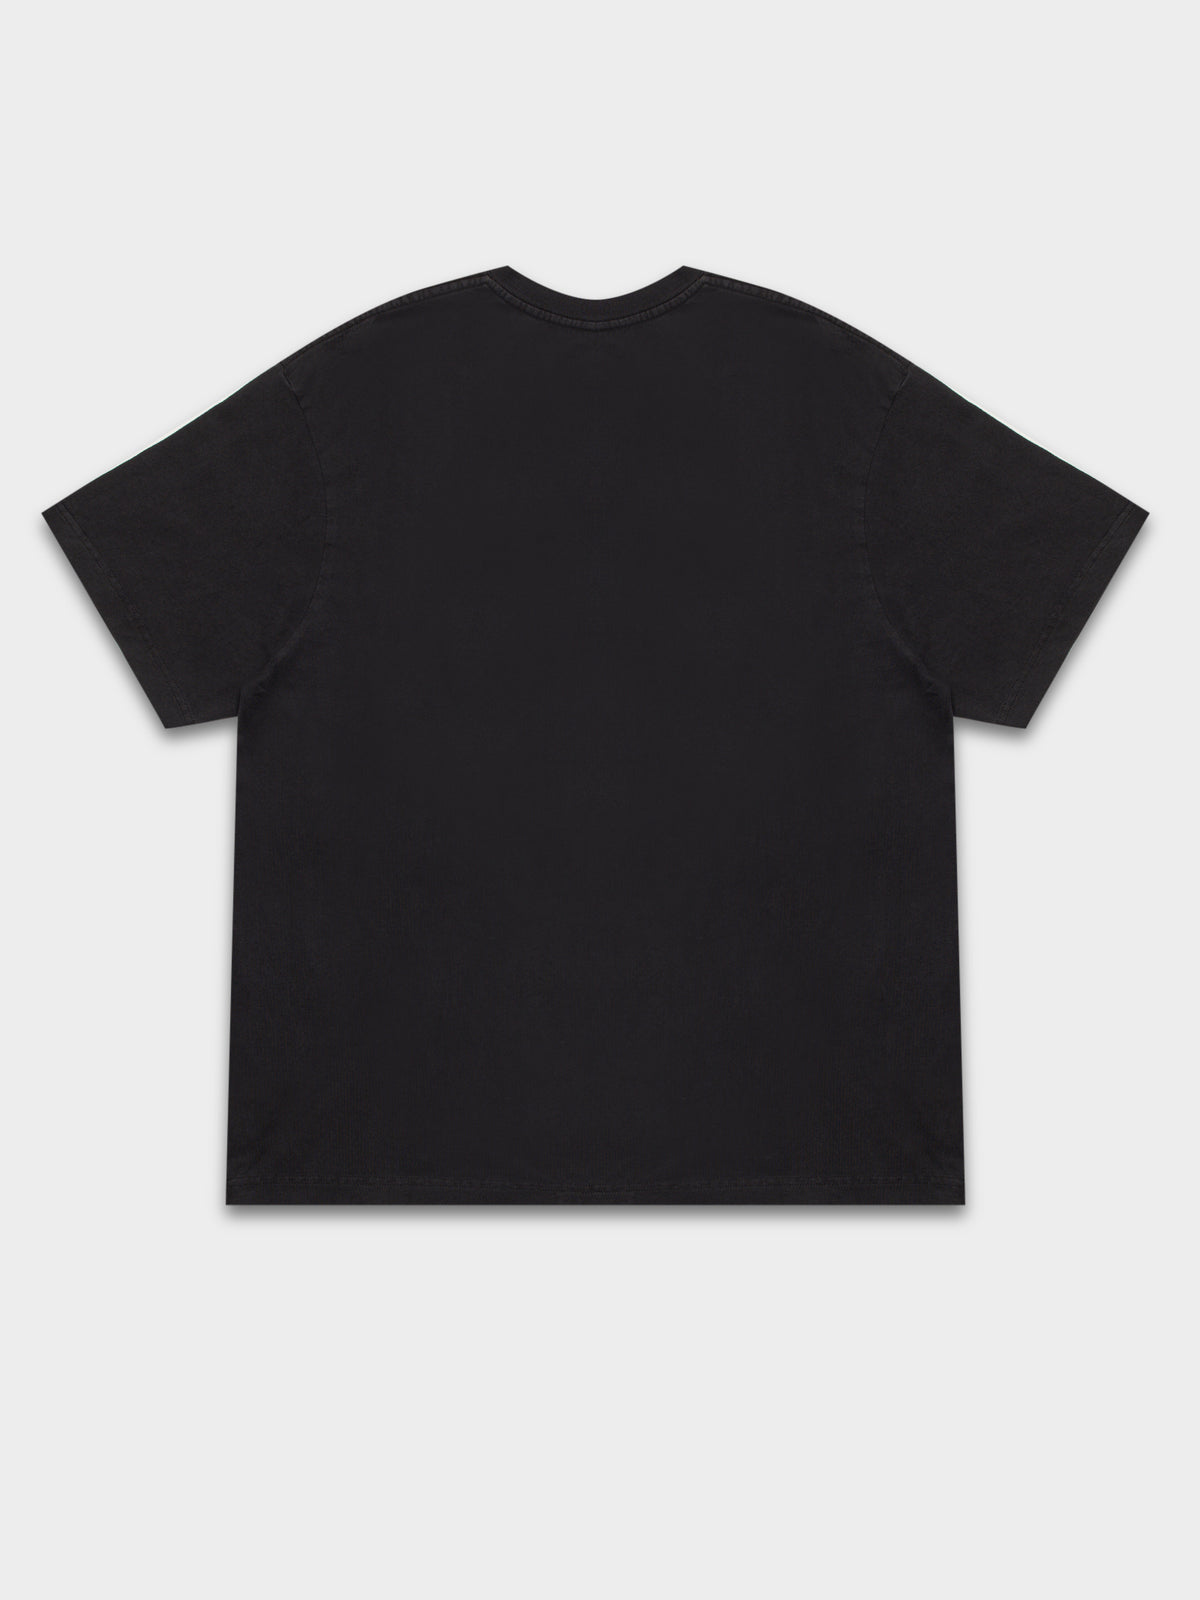 LA Lakers Magic Johnson T-Shirt in Black